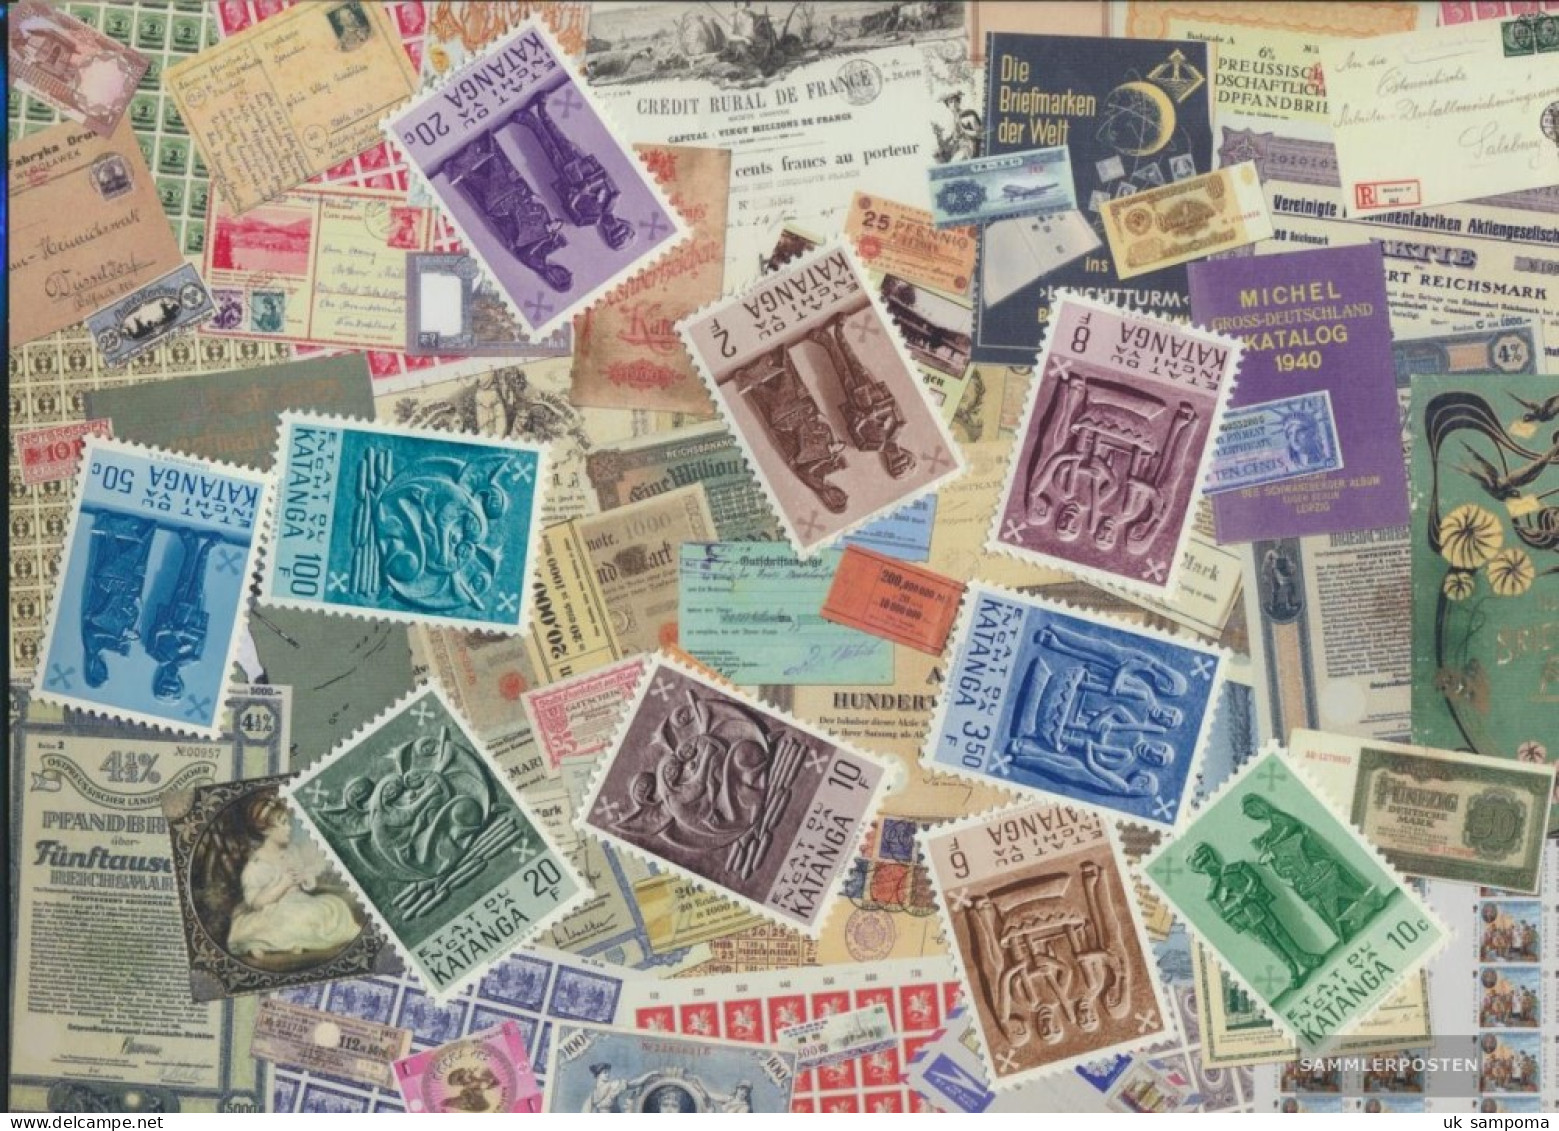 Katanga 10 Different Stamps - Katanga